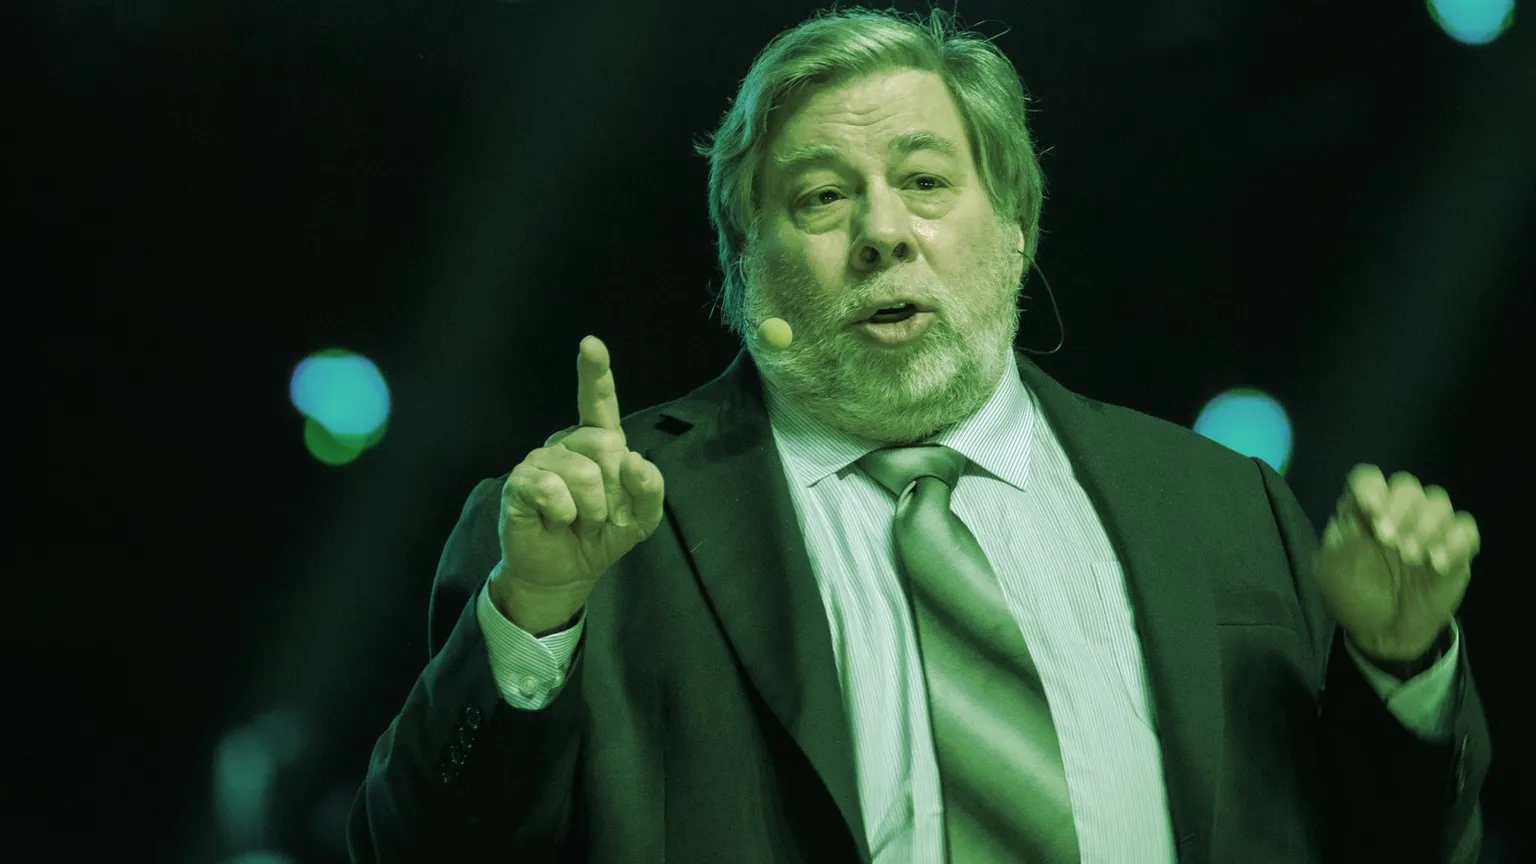 Steve Wozniak co-founded Apple. Image: Shutterstock